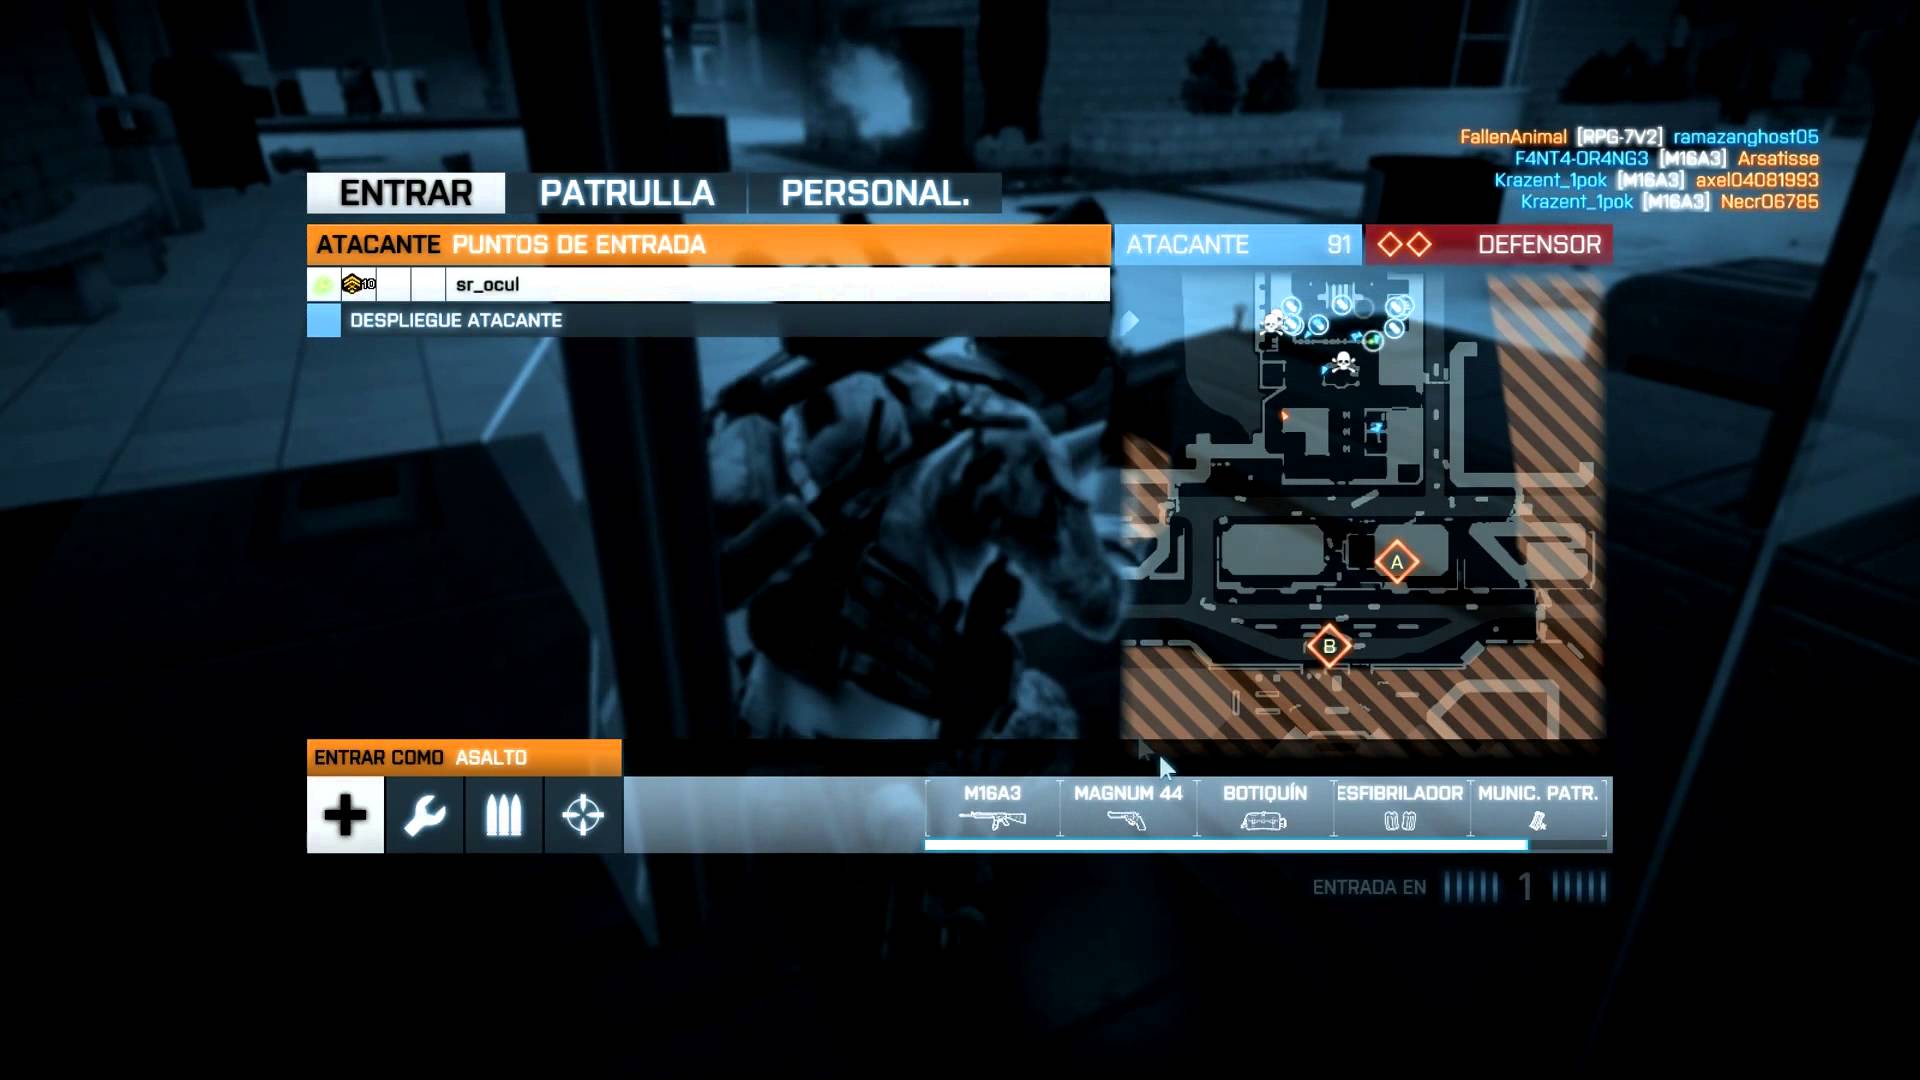 Partida a Battlefield 3 amb en sr_ocul - Operació Metro de Nil66